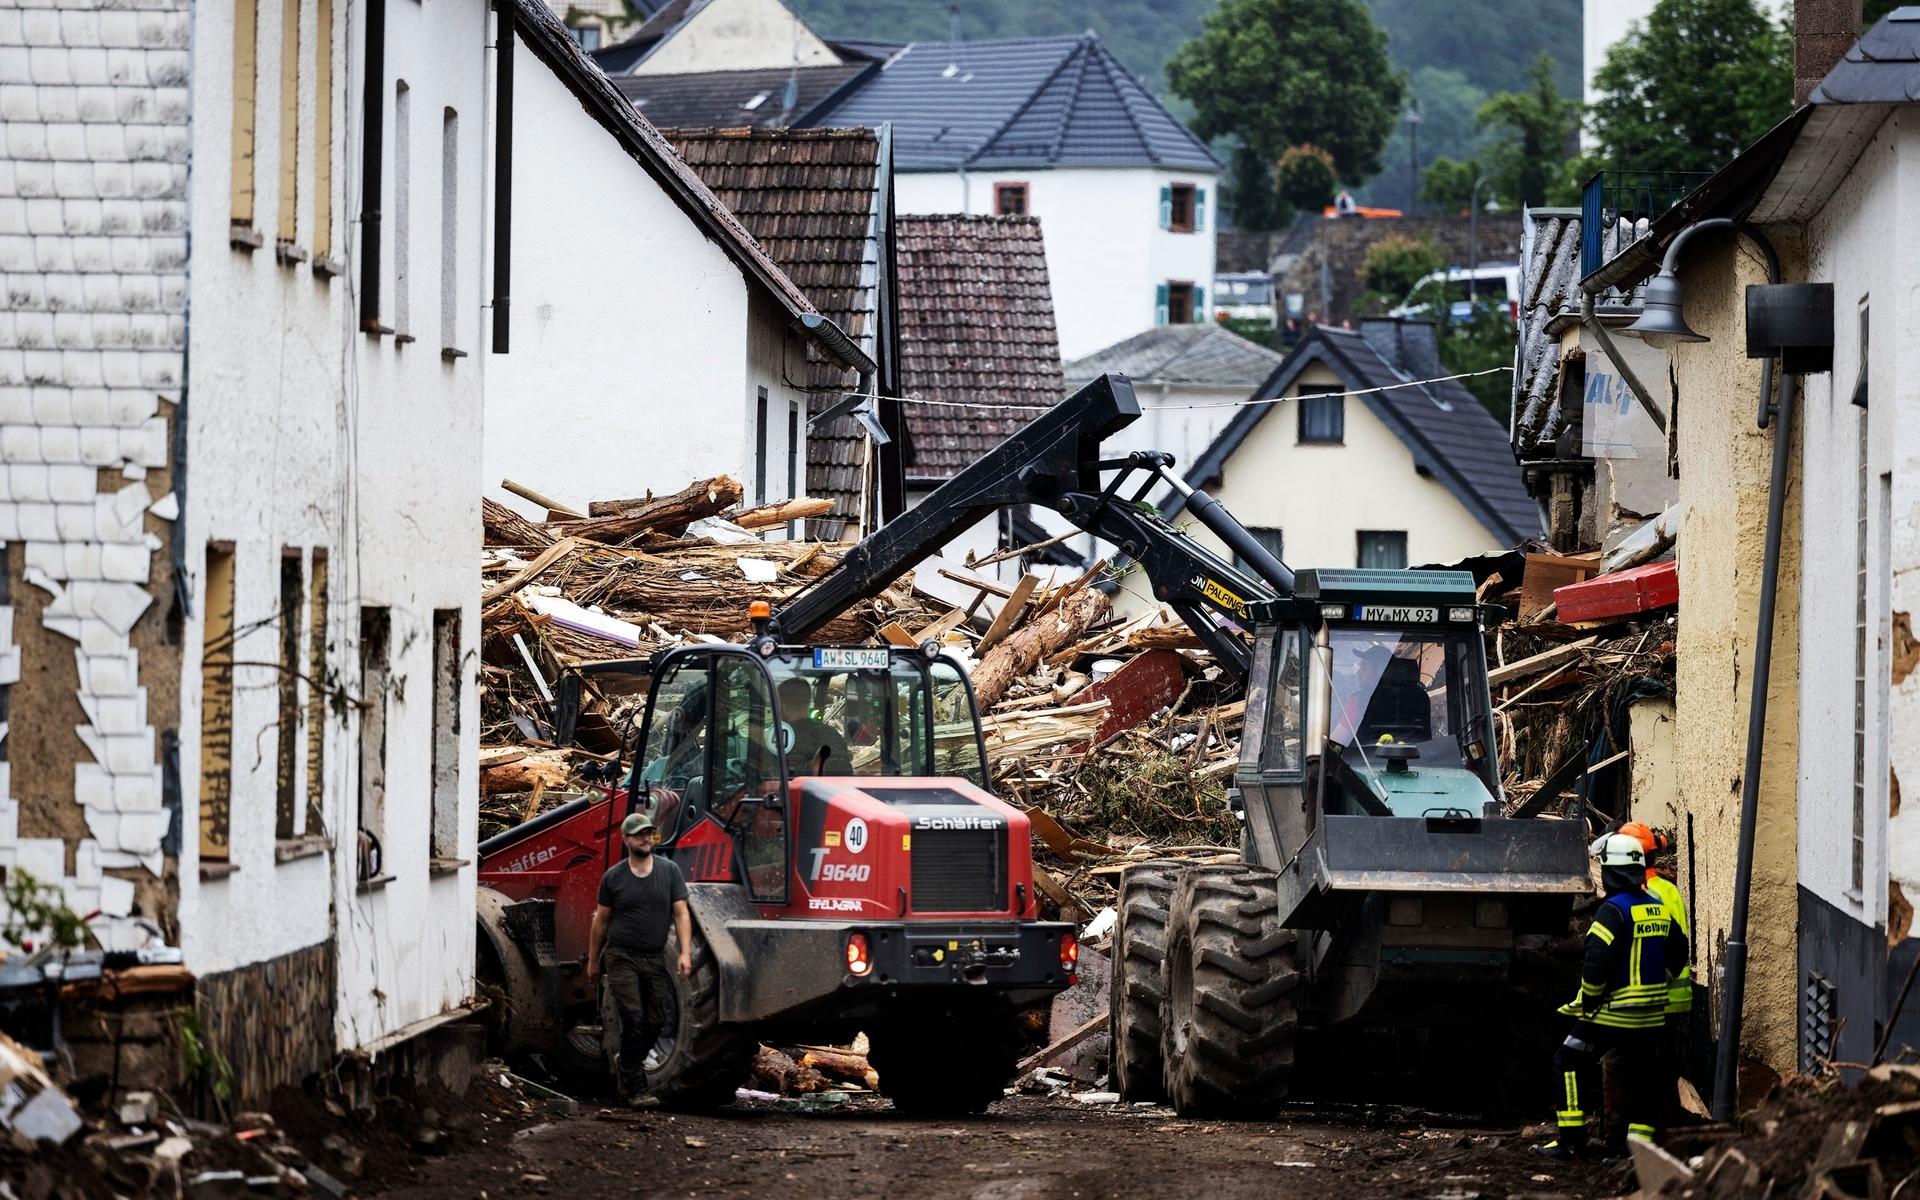 SCHULD 2021-07-16Förödelse i byn Schuld i västra Tyskland sedan stormen Bernd dragit förbi. I bild: Foto: Nils Petter Nilsson